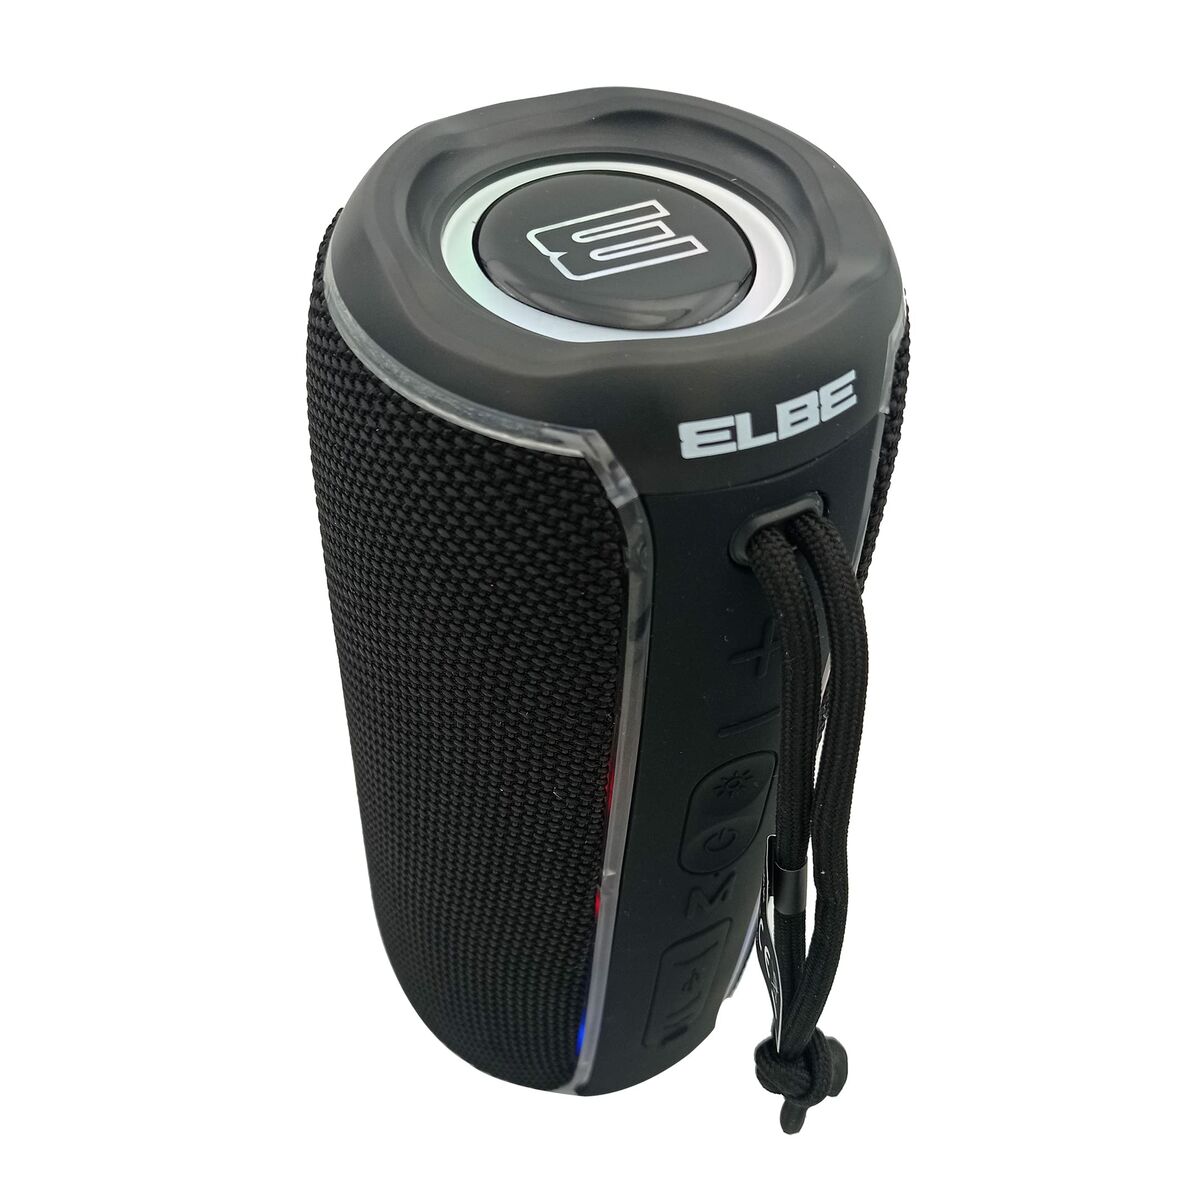 Portable loudspeaker Elbe black 20 W Bluetooth